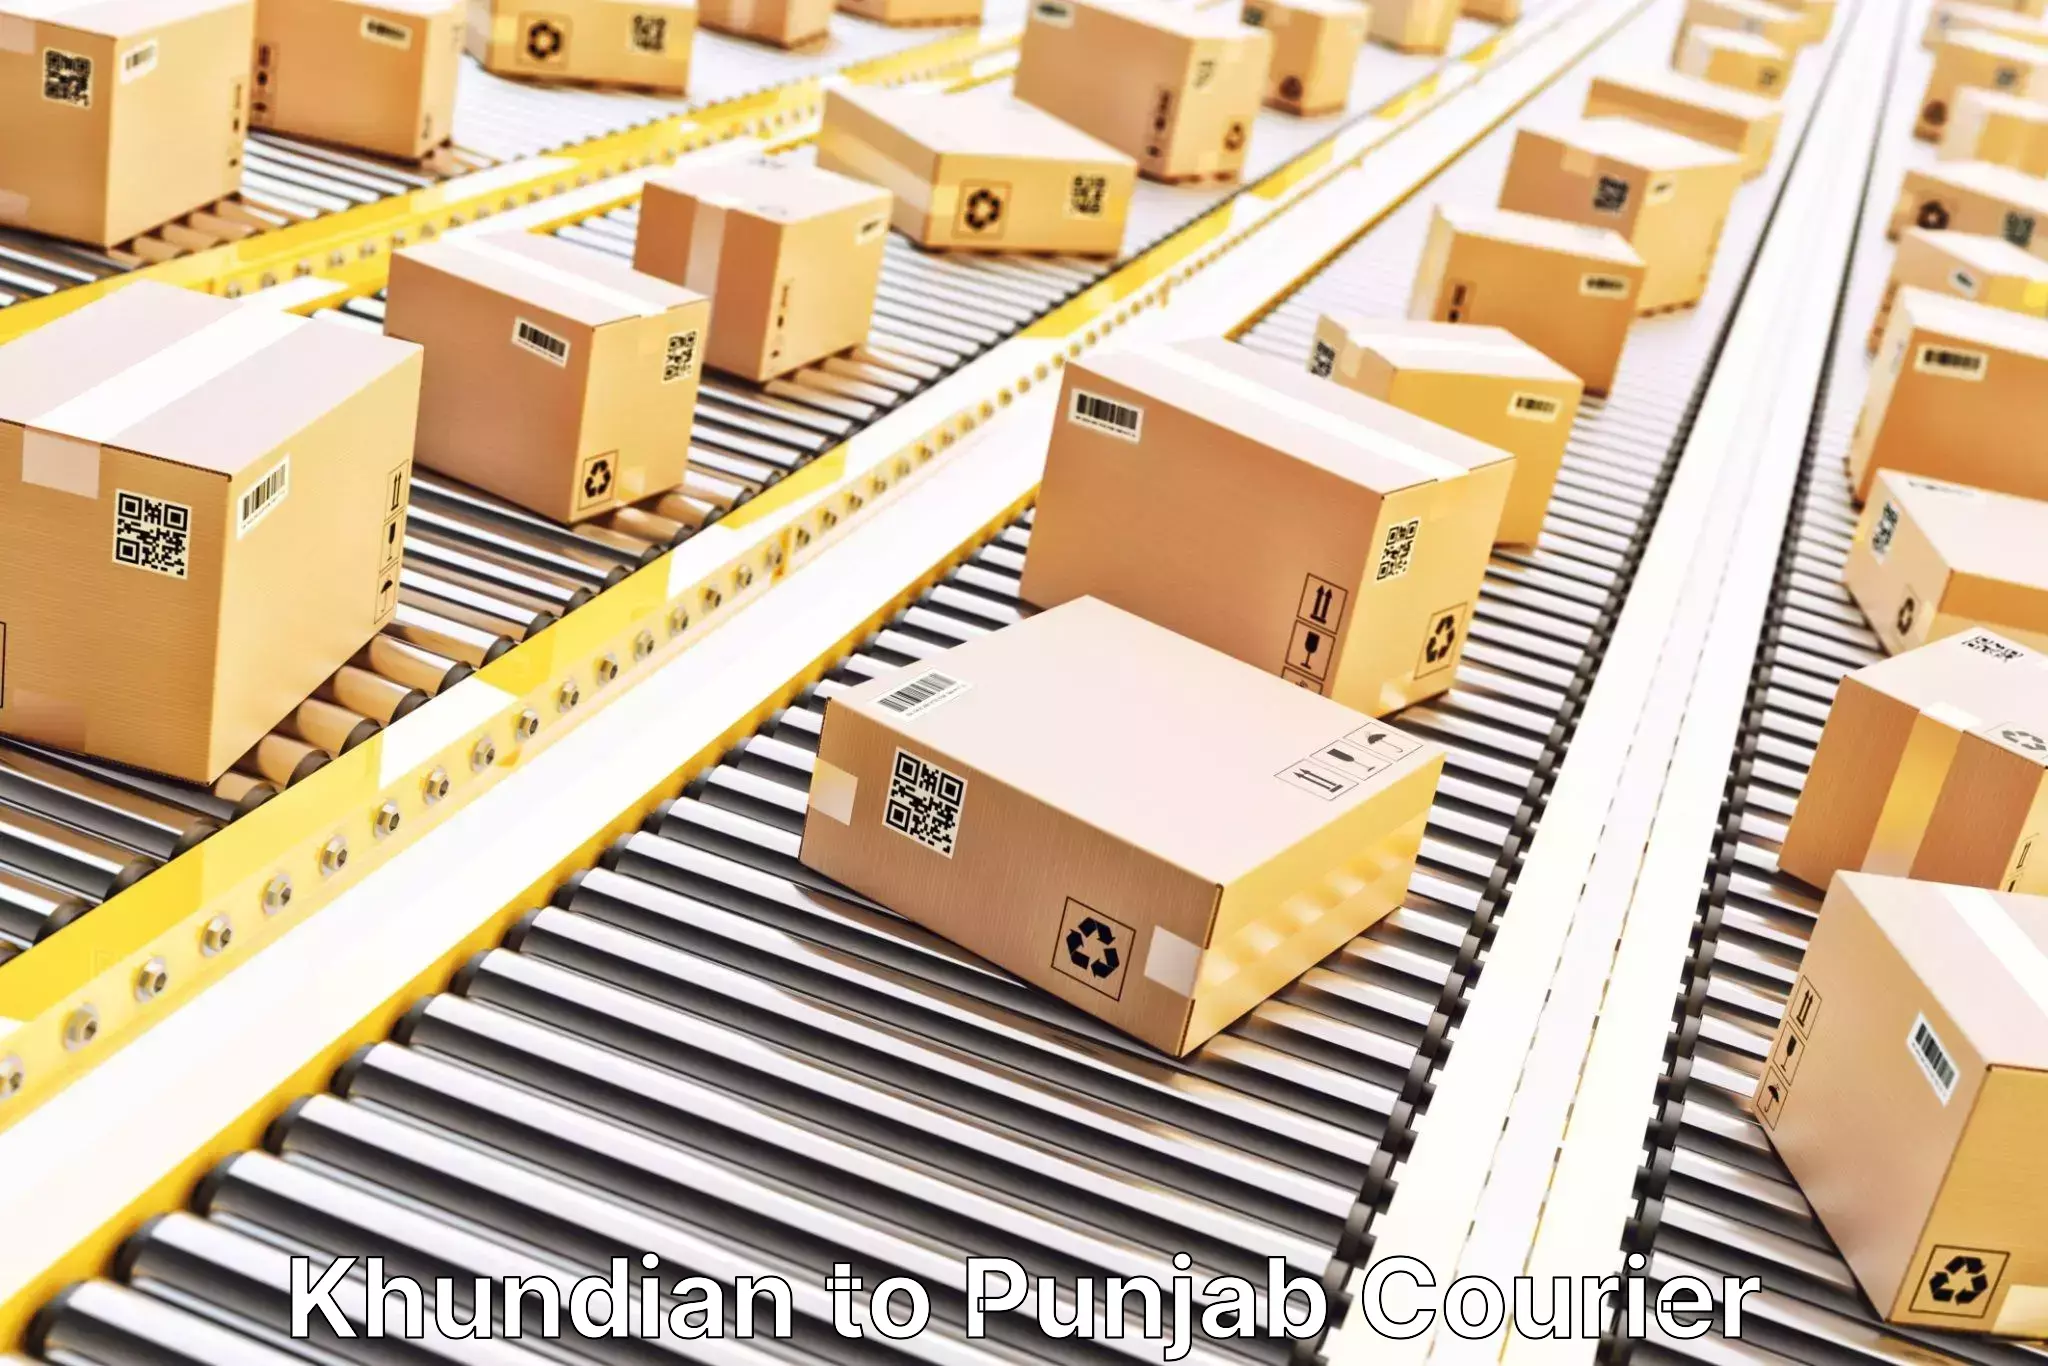 Door-to-door shipment Khundian to Punjab